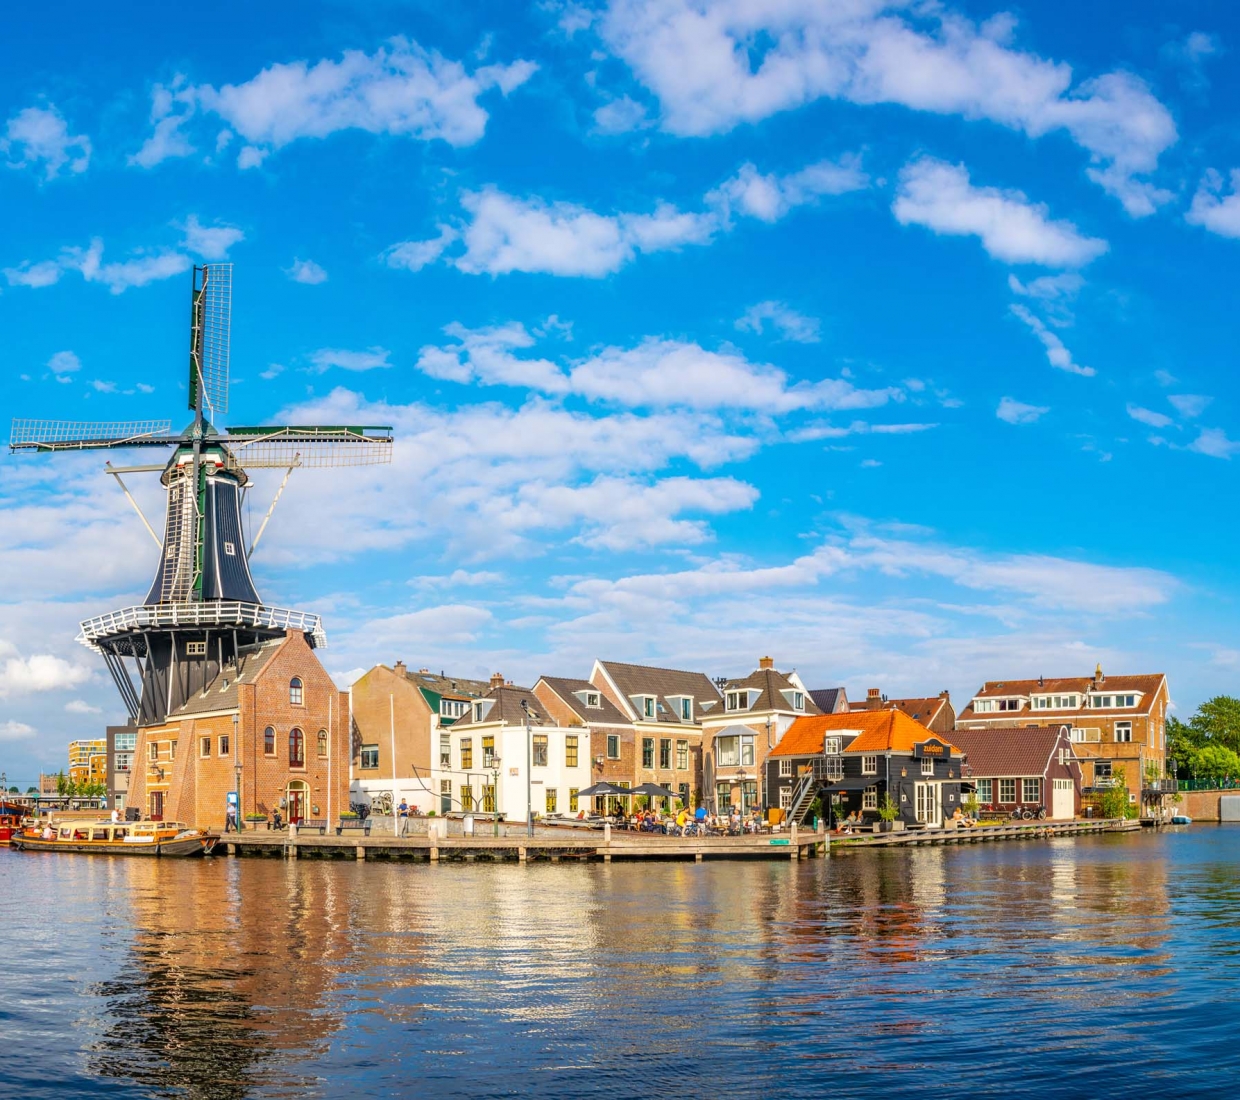 Seleção dos melhores e mais bonitos hotéis e casas de férias em Países Baixos